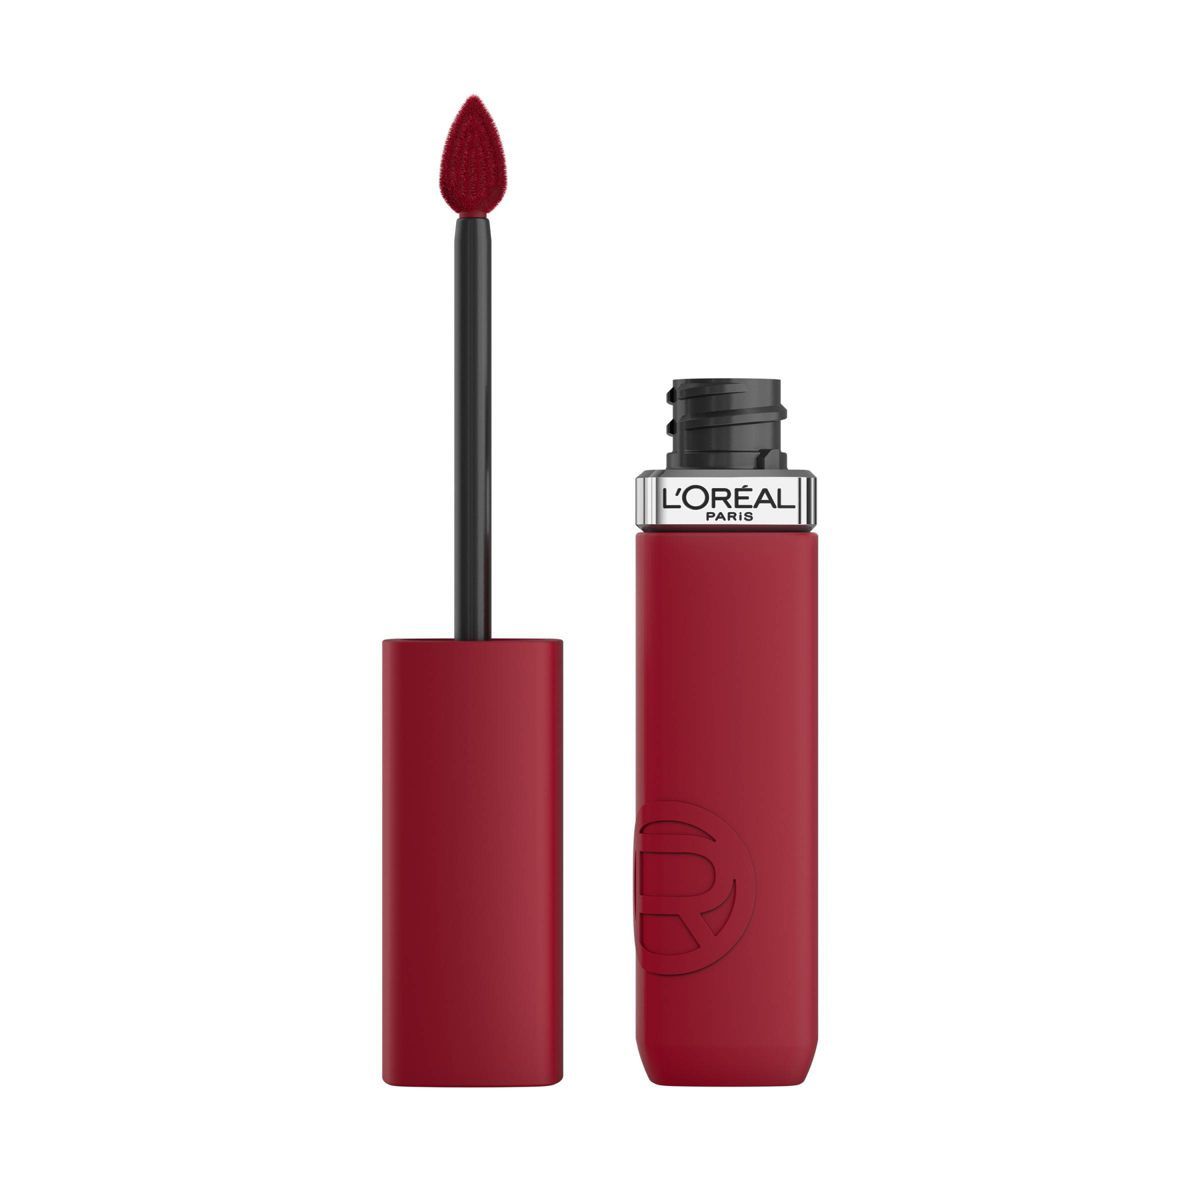 L'Oreal Paris Infallible Matte Resistance Liquid Matte Lipstick - 0.16 fl oz | Target